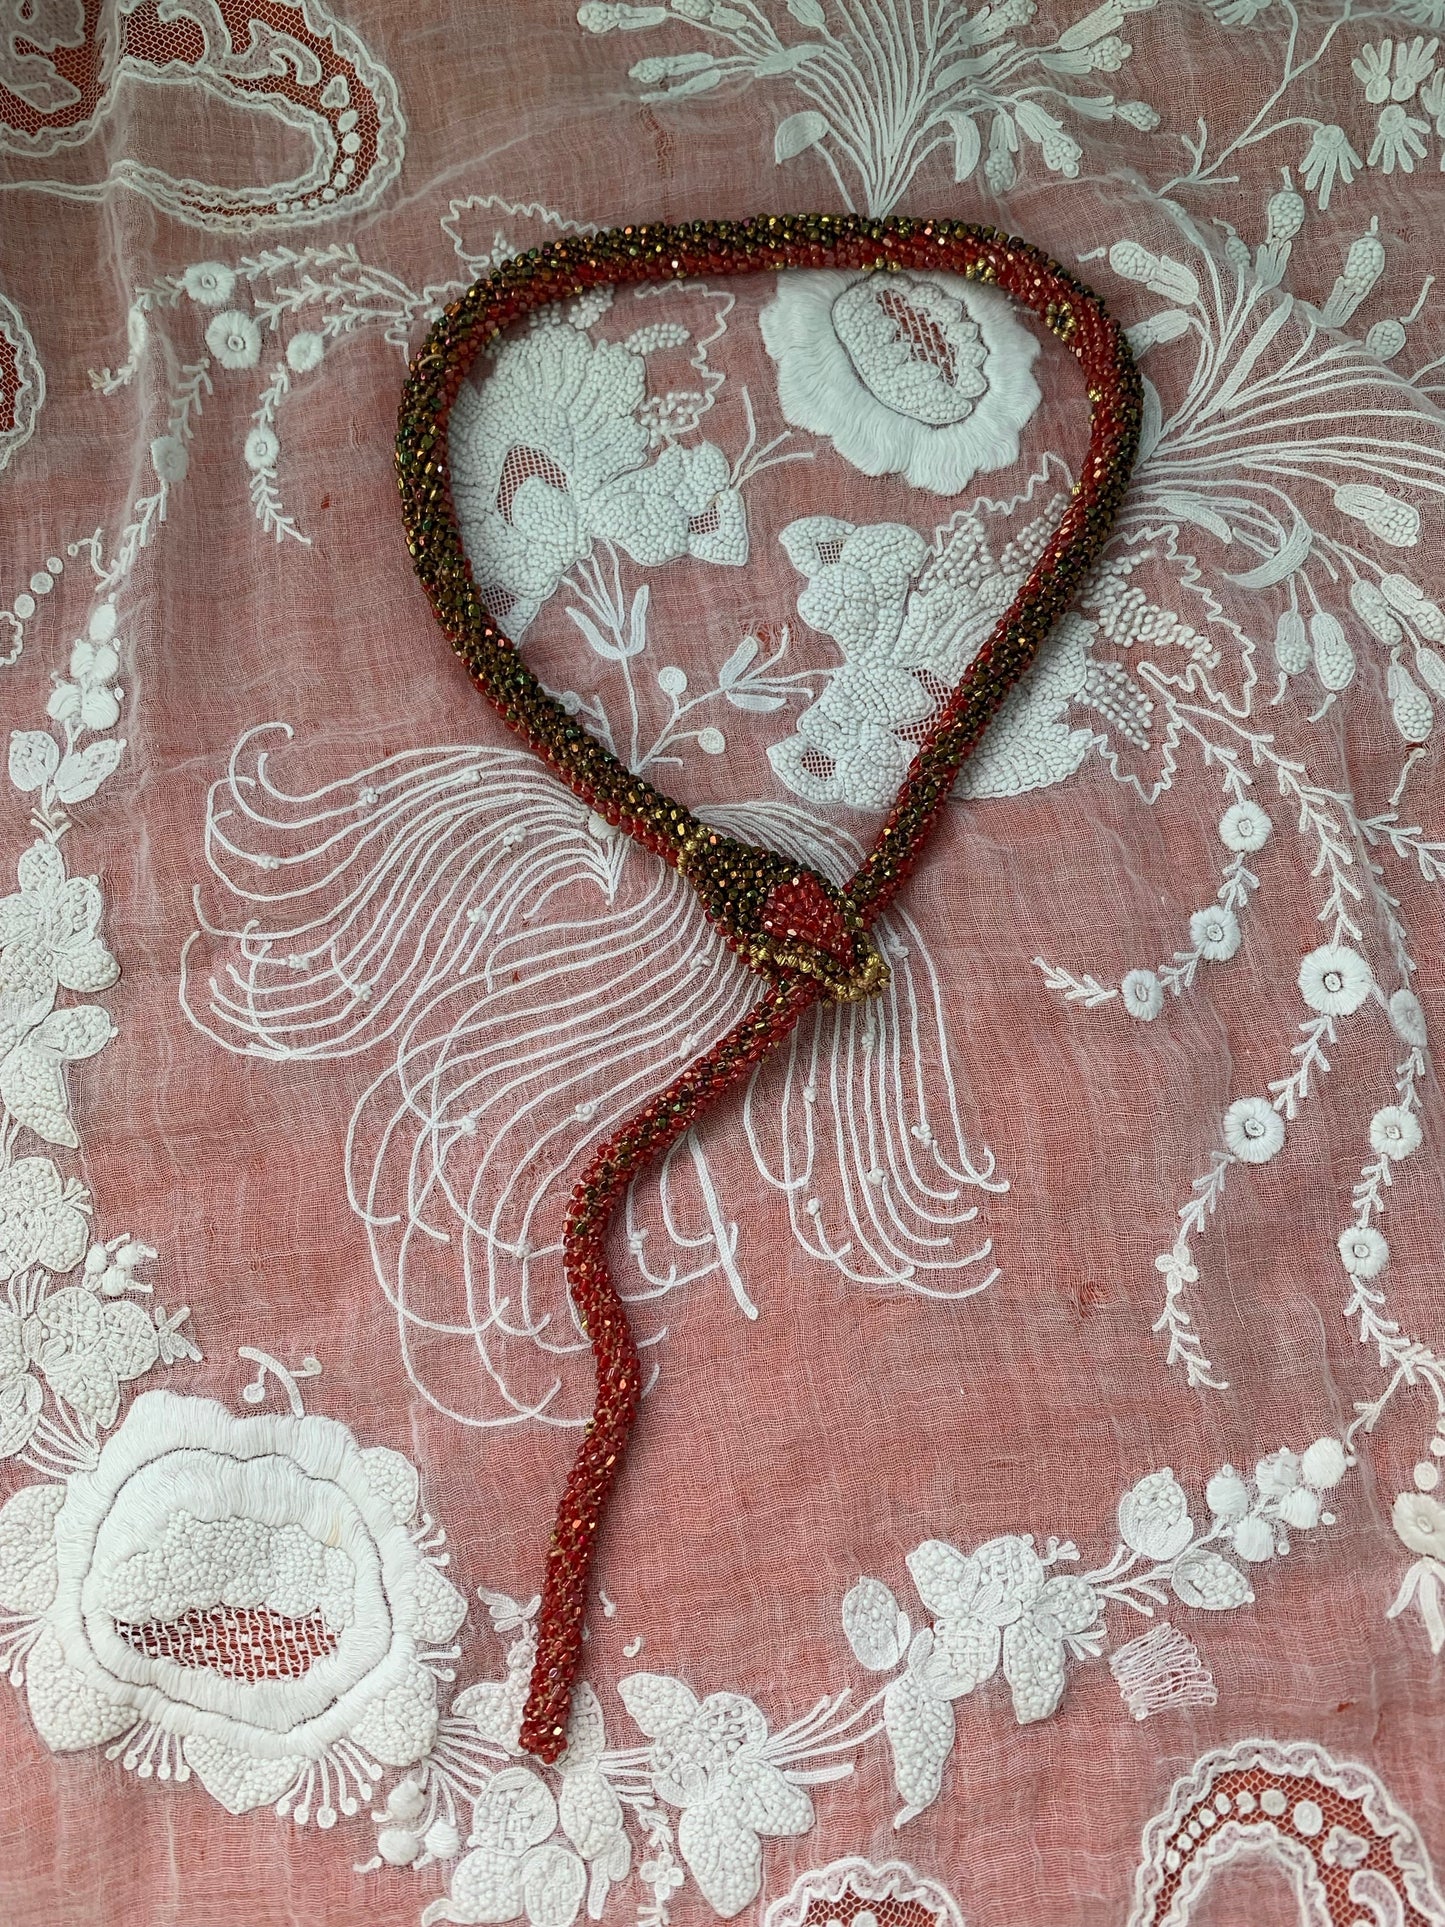 Bead Crochet Snake | Red Flower